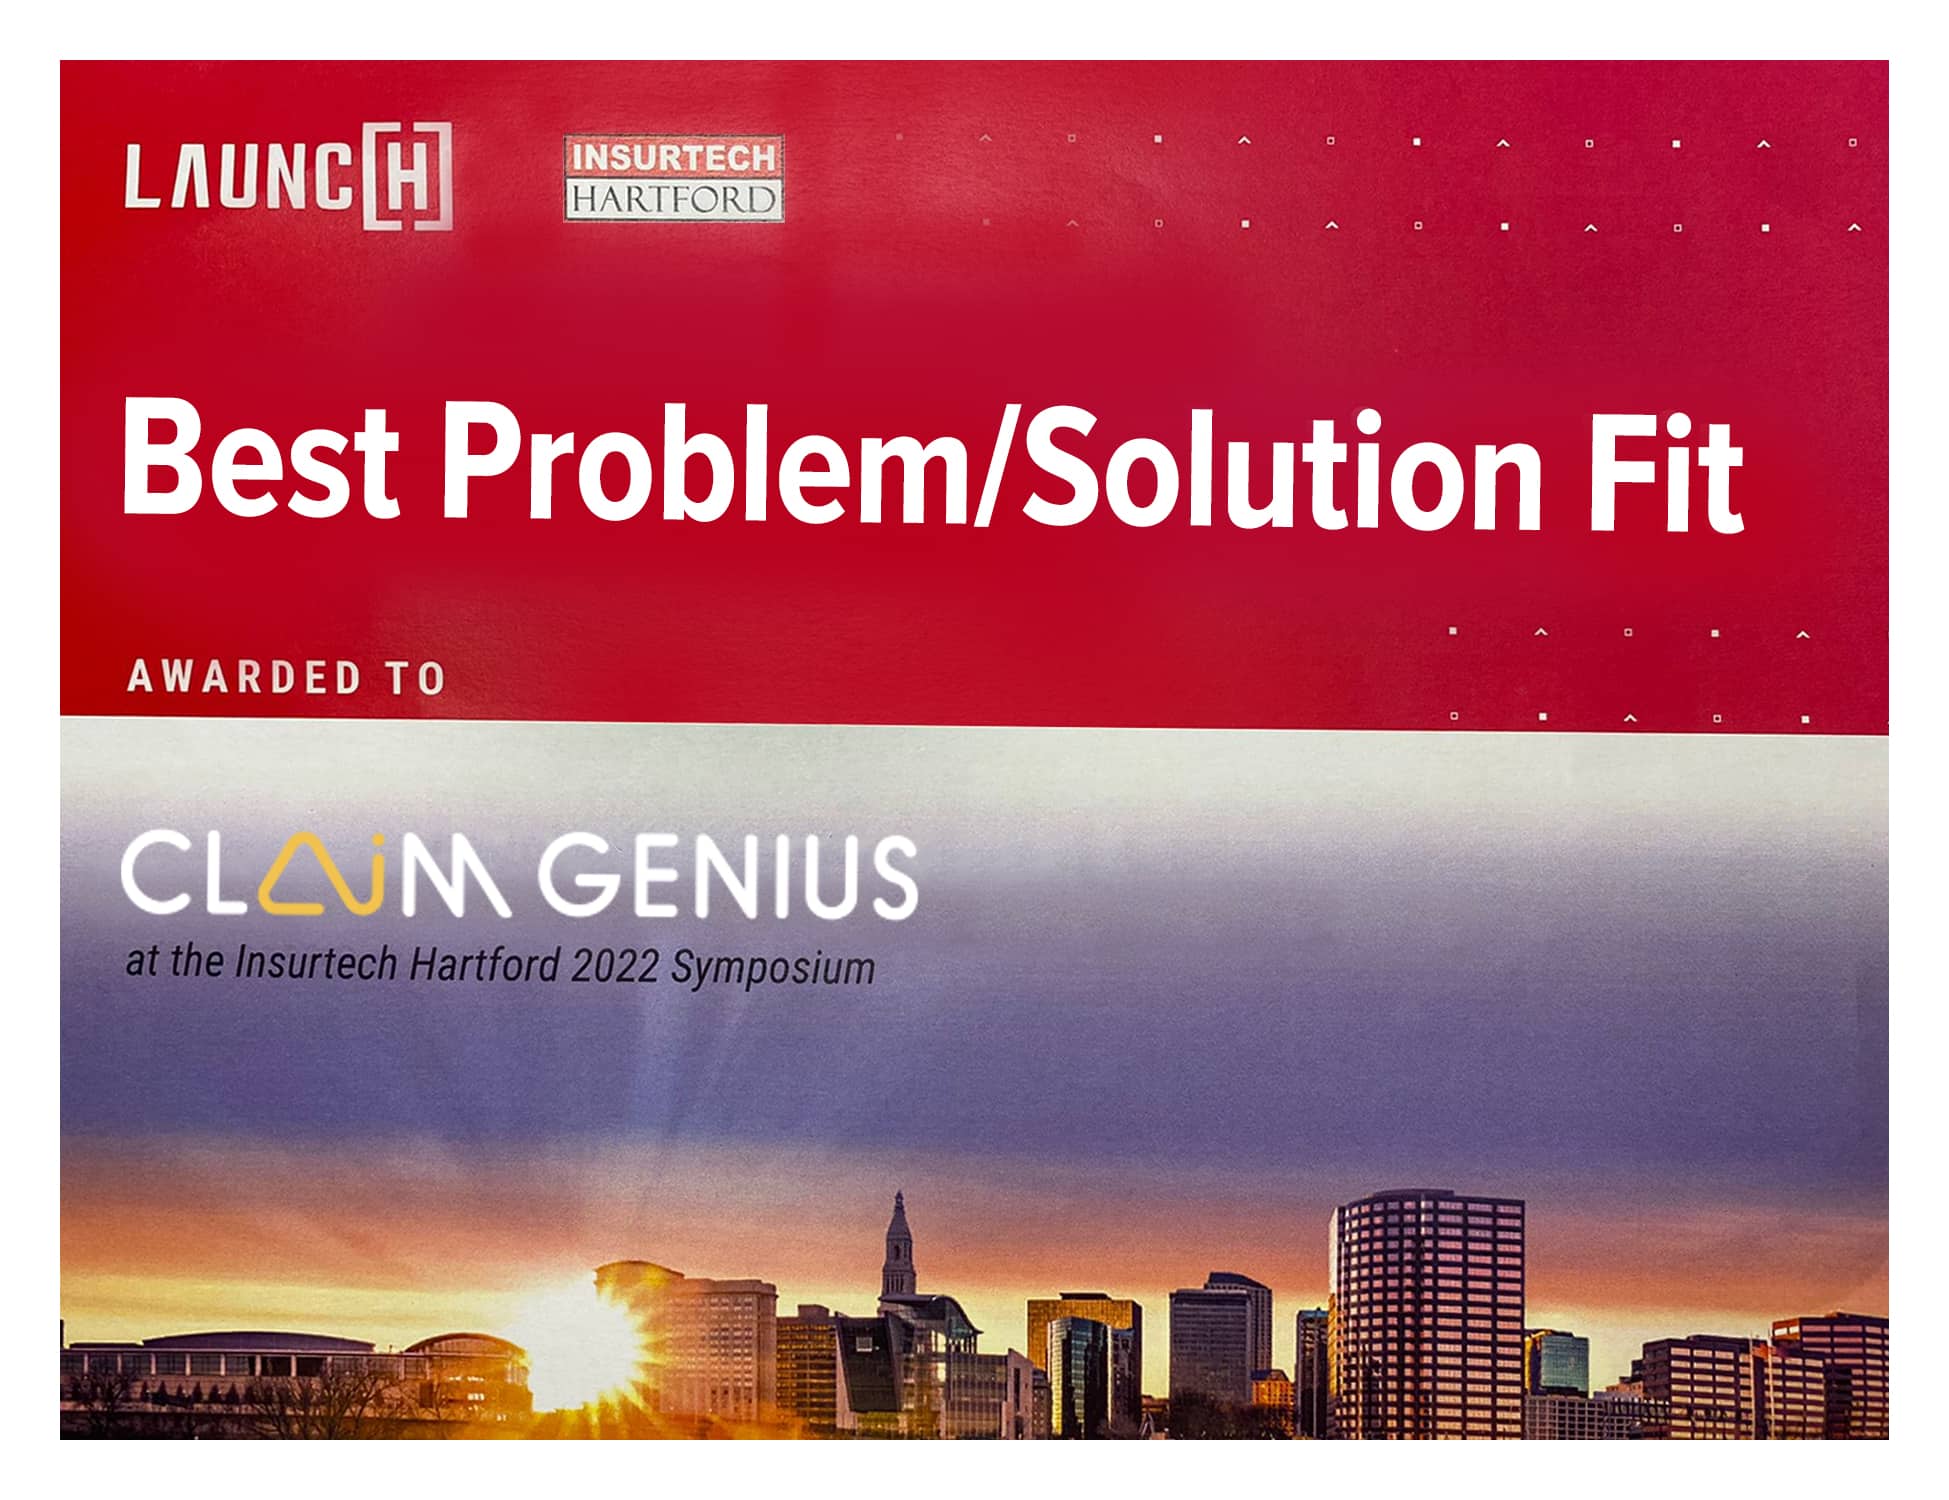 Best Problem Solution Fit Certificate for Claim Genius - Claim Genius at InsurTech Hartford